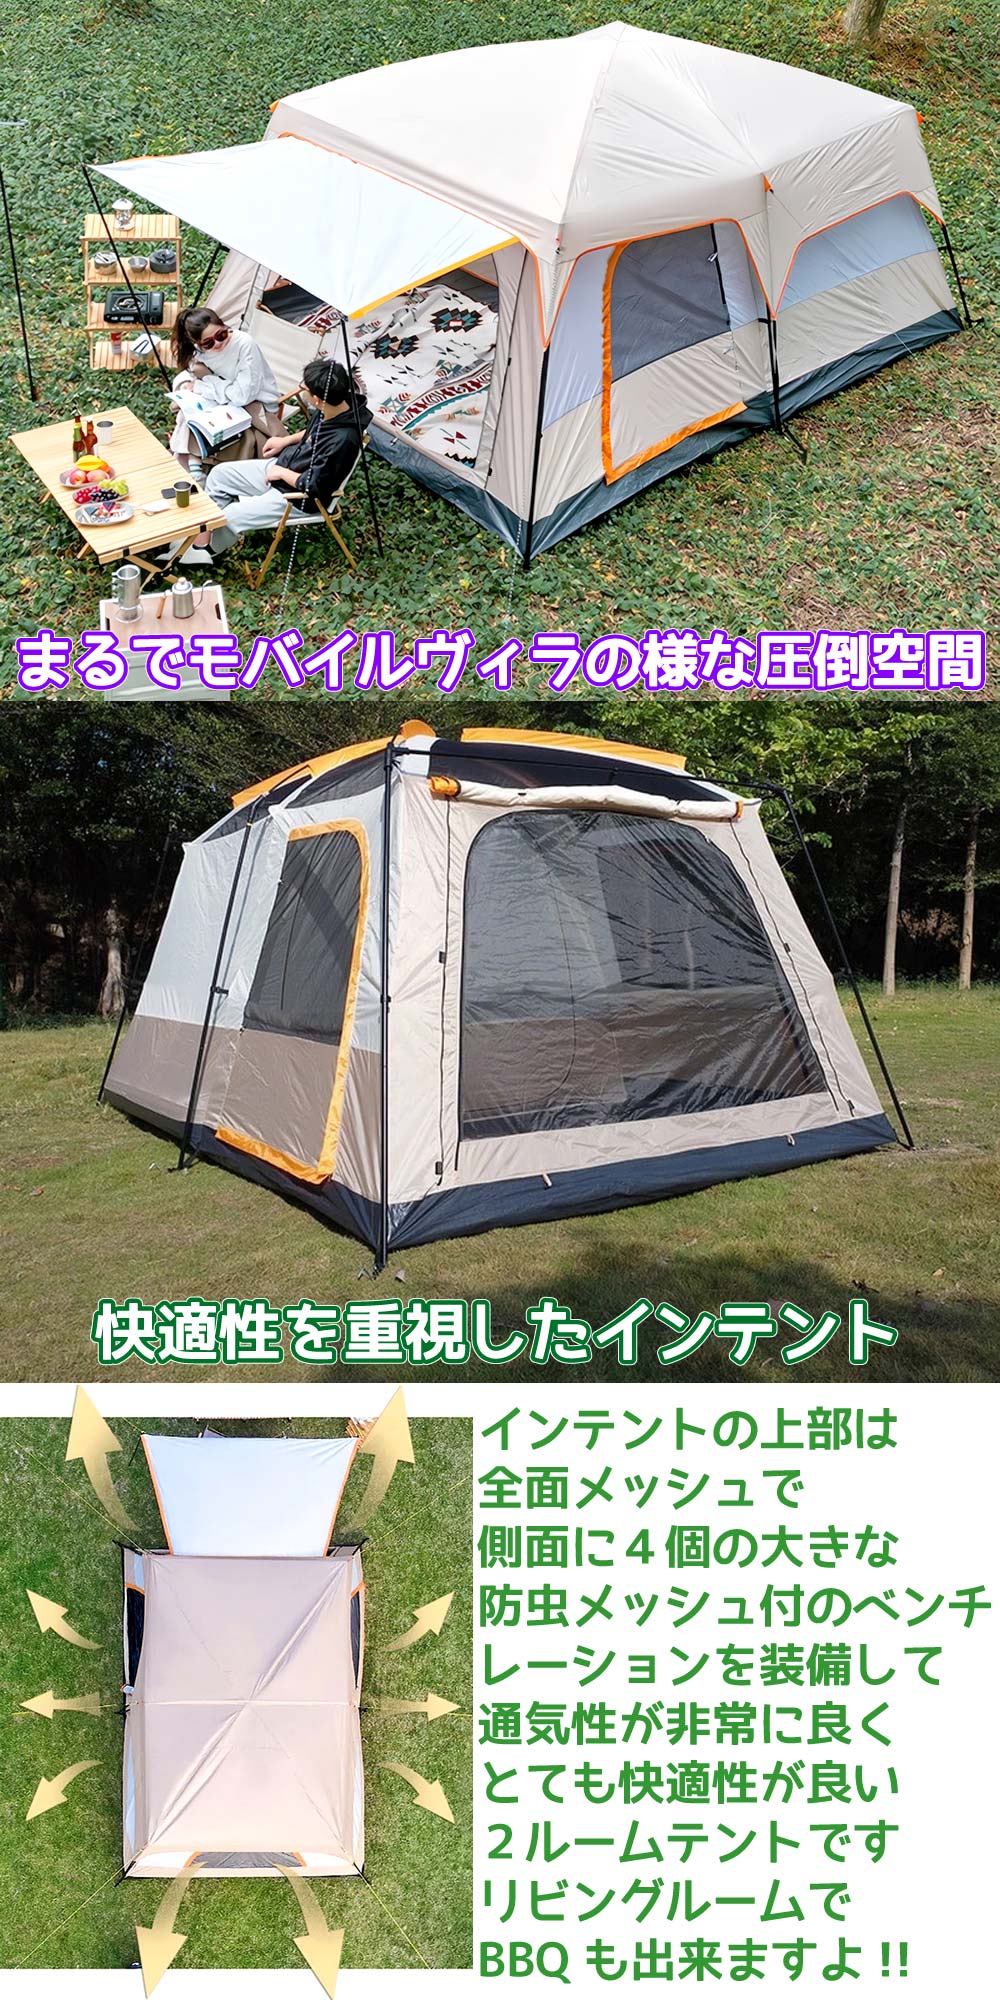 ツールームドームテント 4-10人用 自立式テント キャノピー付 UVカット